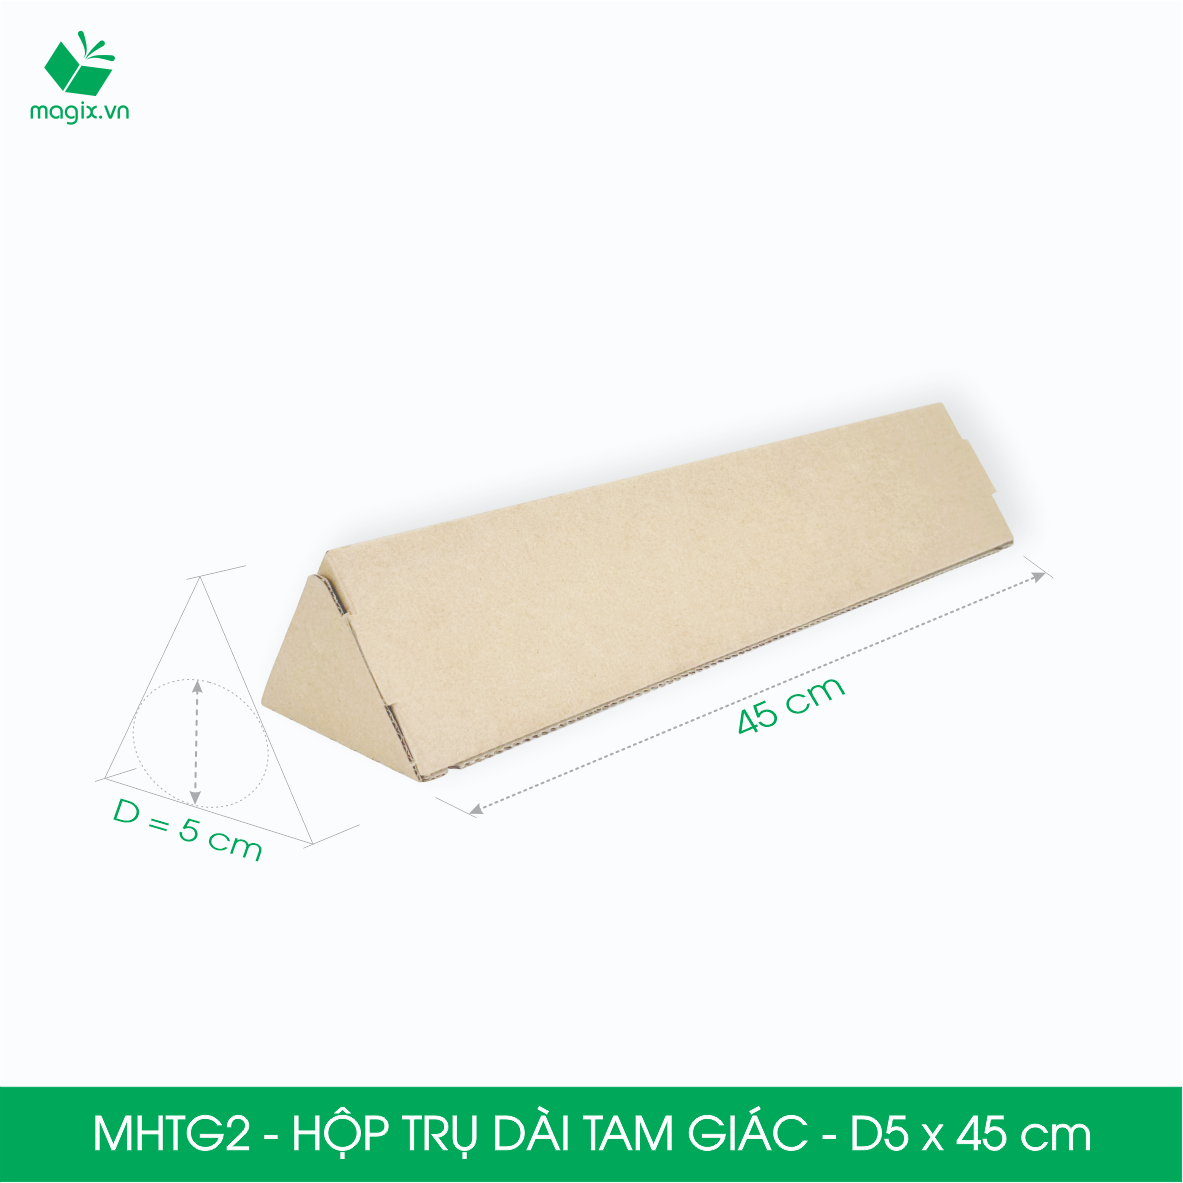 MHTG2 - D5x45 cm - 100 Hộp trụ dài tam giác thay thế ống giấy - Hộp carton đóng gói hàng